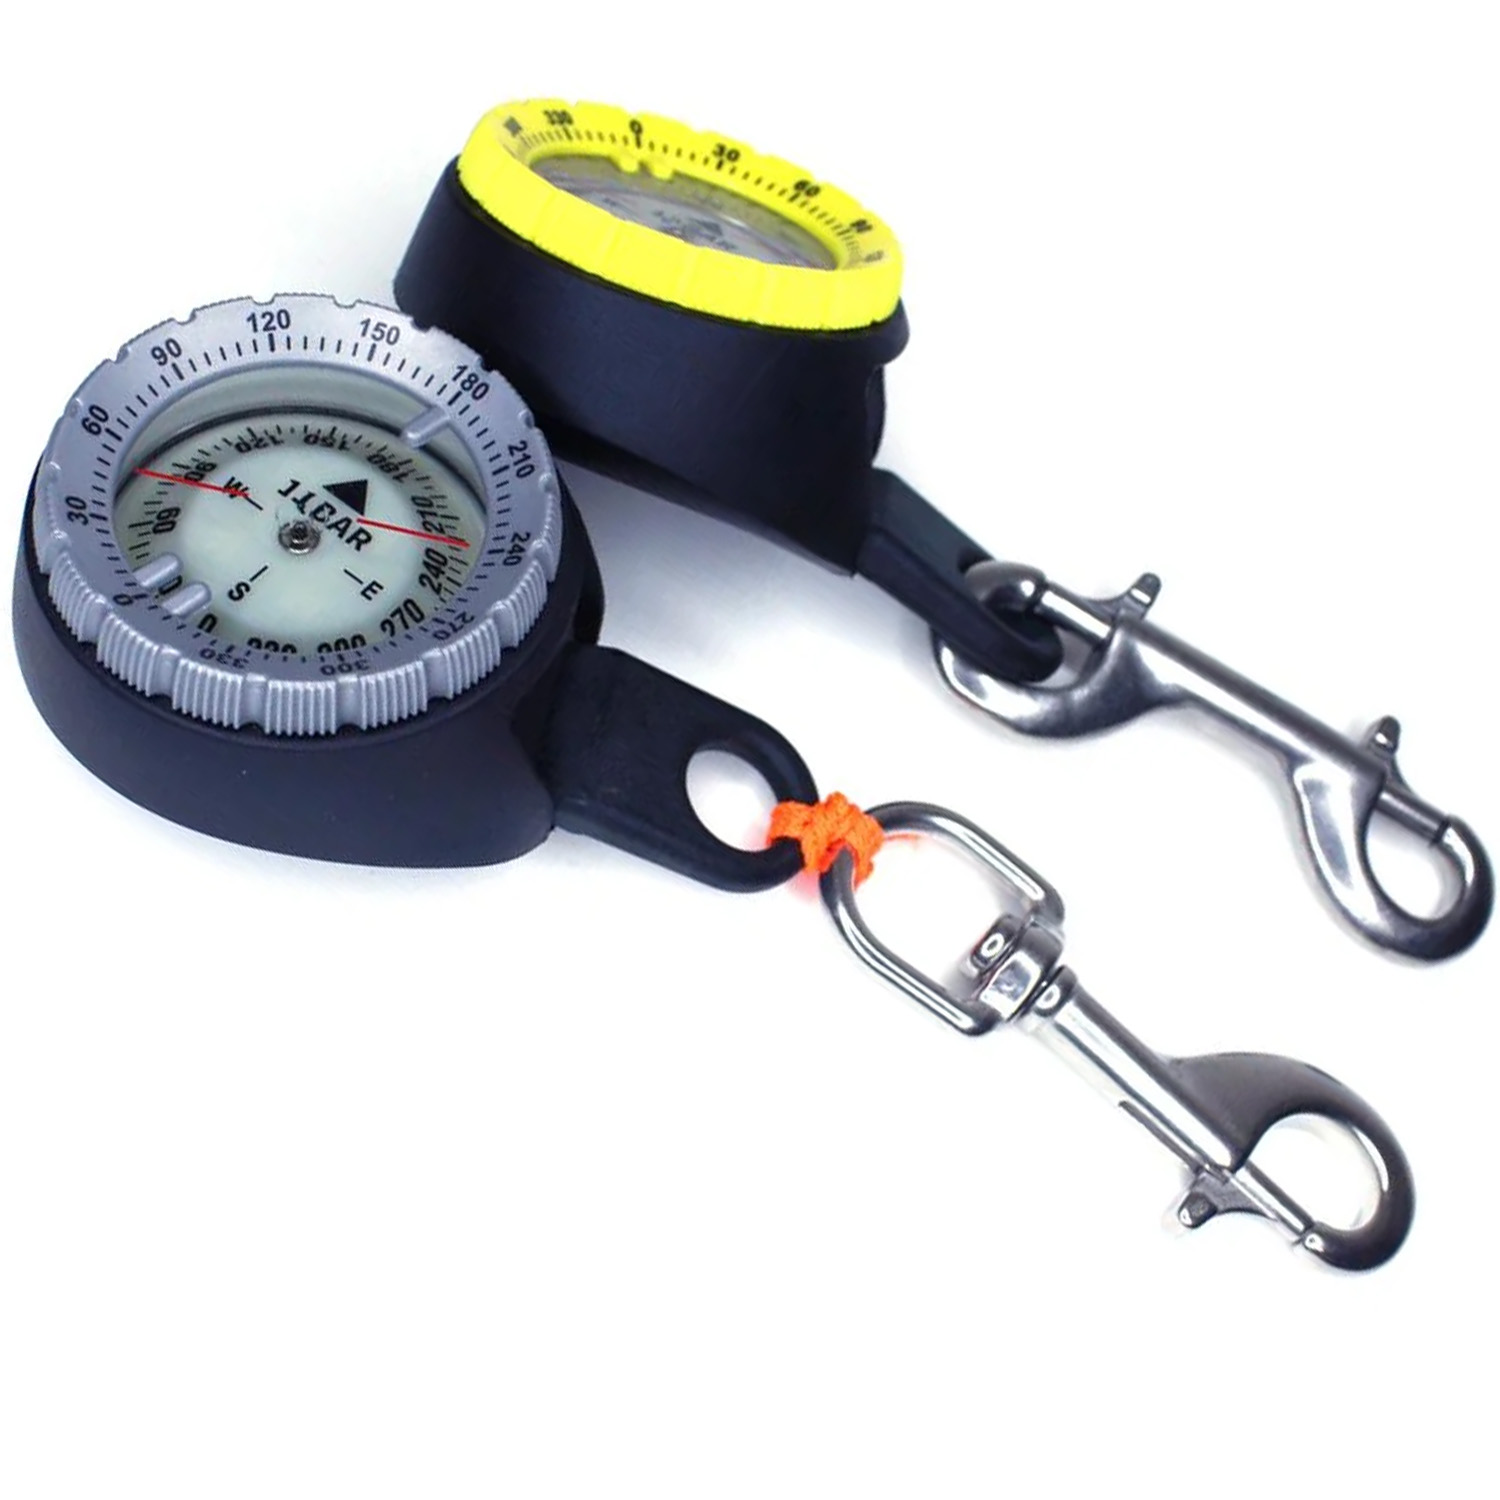 Kompass mit Bolt-Snap Adapter